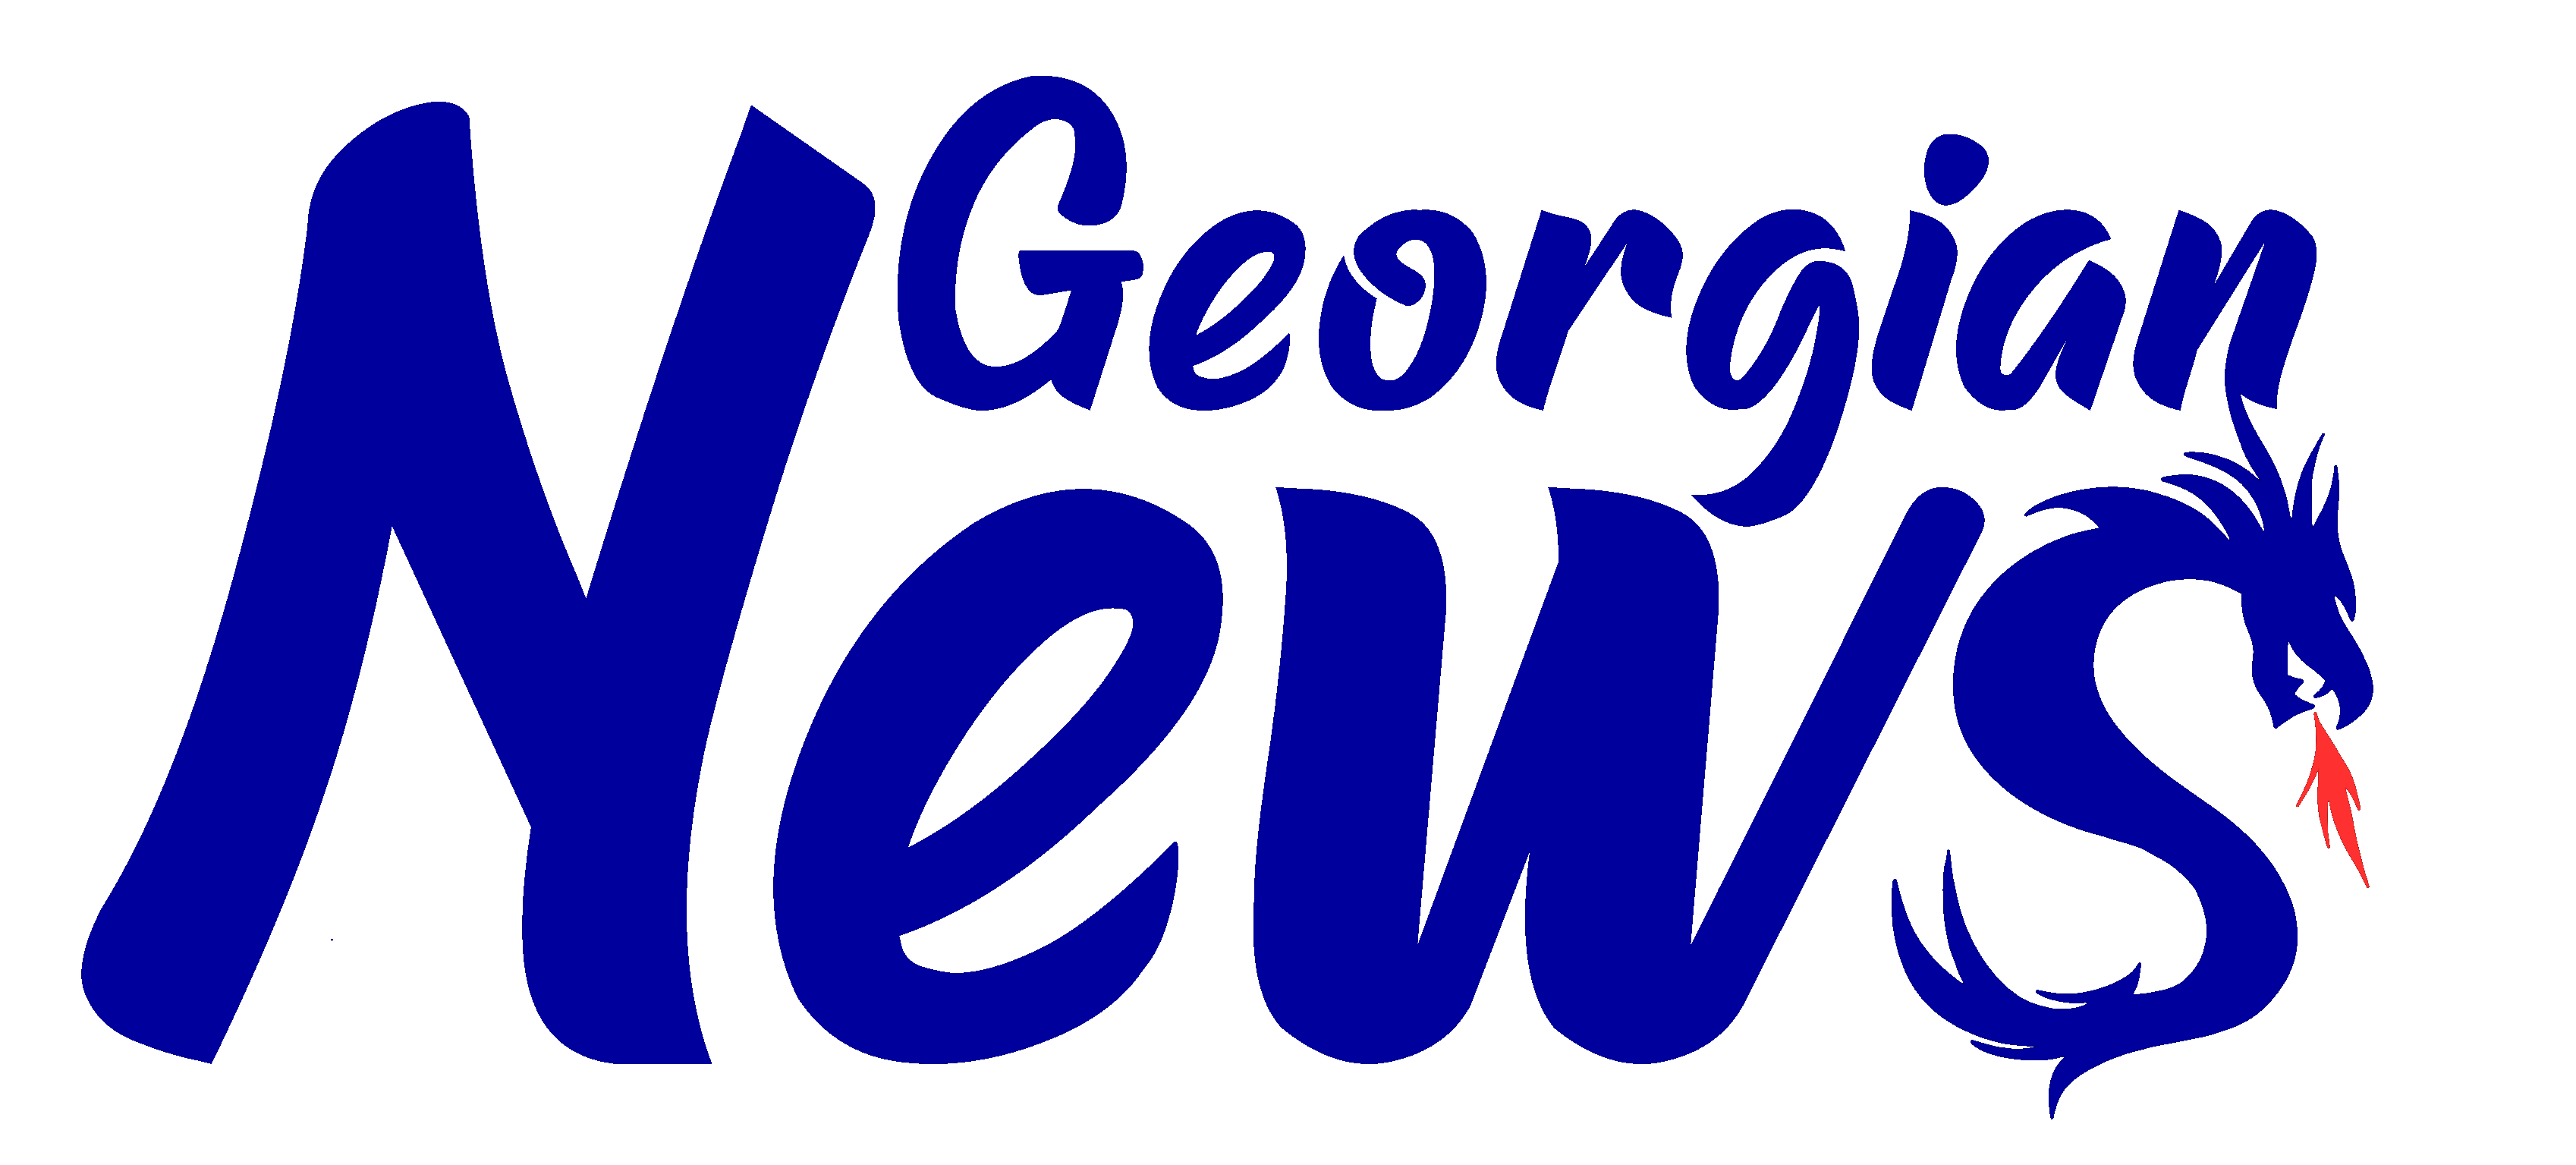 Georgian News del 4 de diciembre de 2020